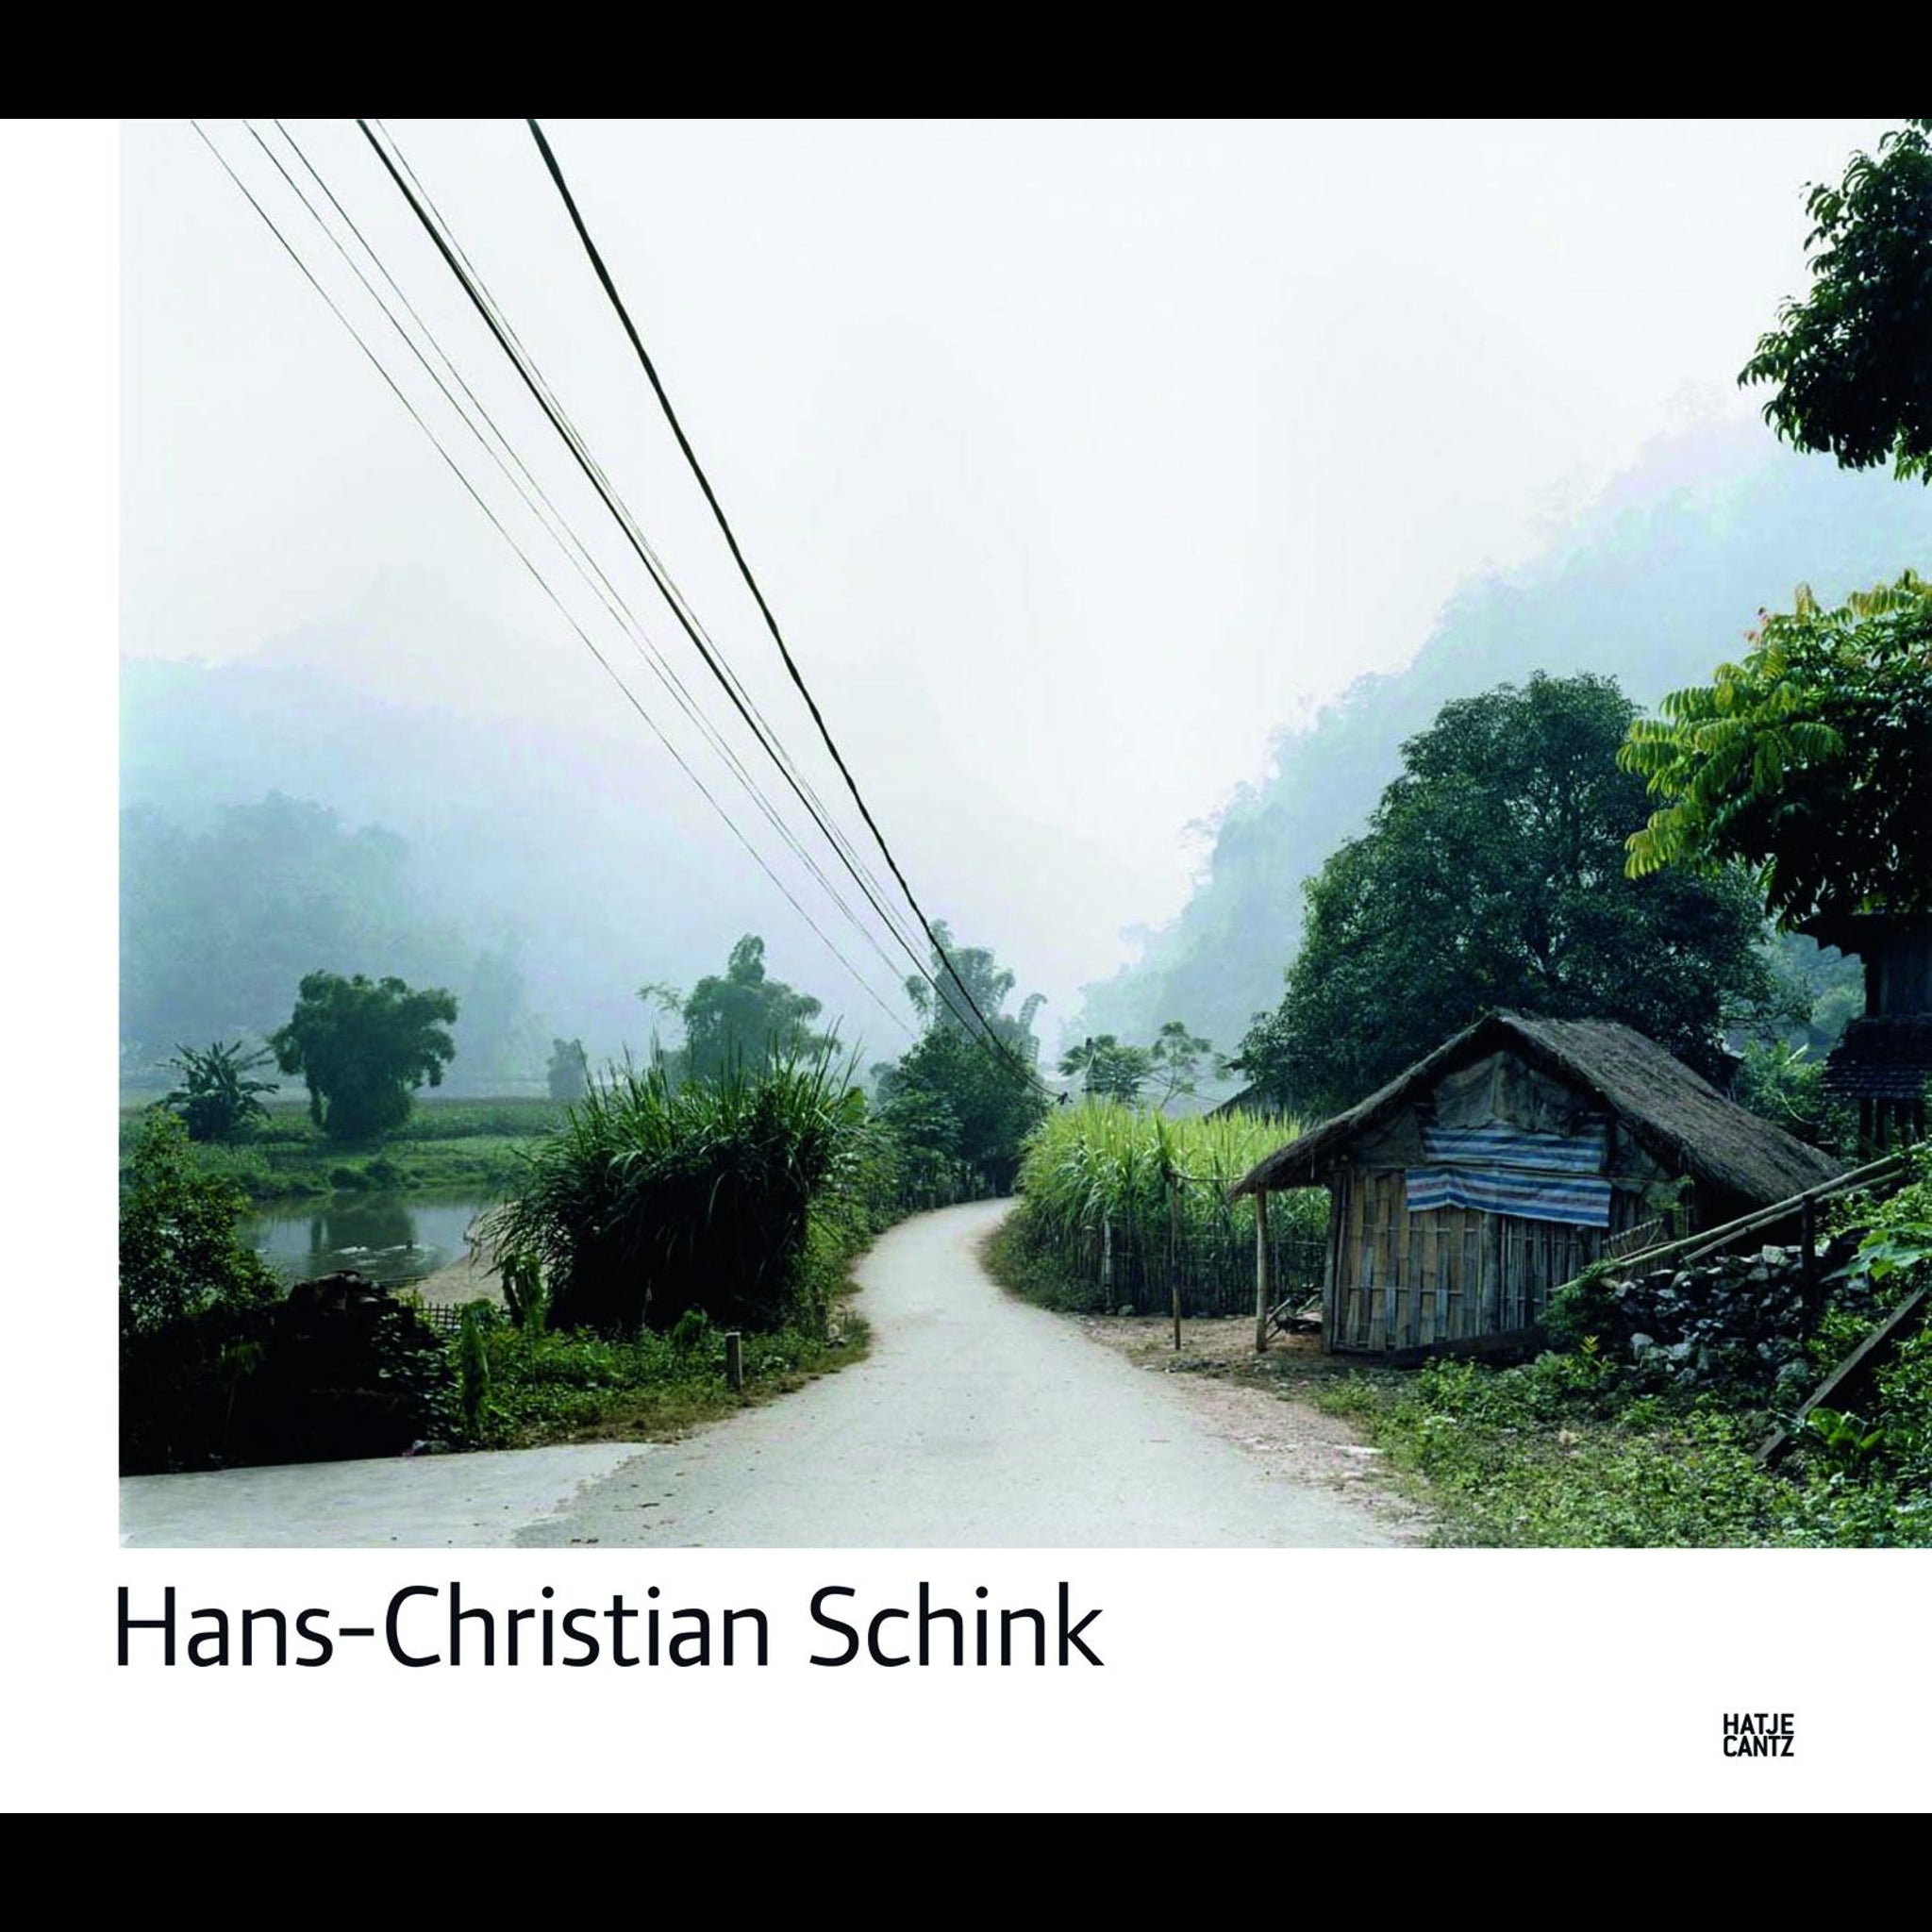 【新作定番人気】HANS-CHRISTIAN SCHINK VERKEHRSPROJEKTE TRAFFIC PROJEKTE 自然、風景